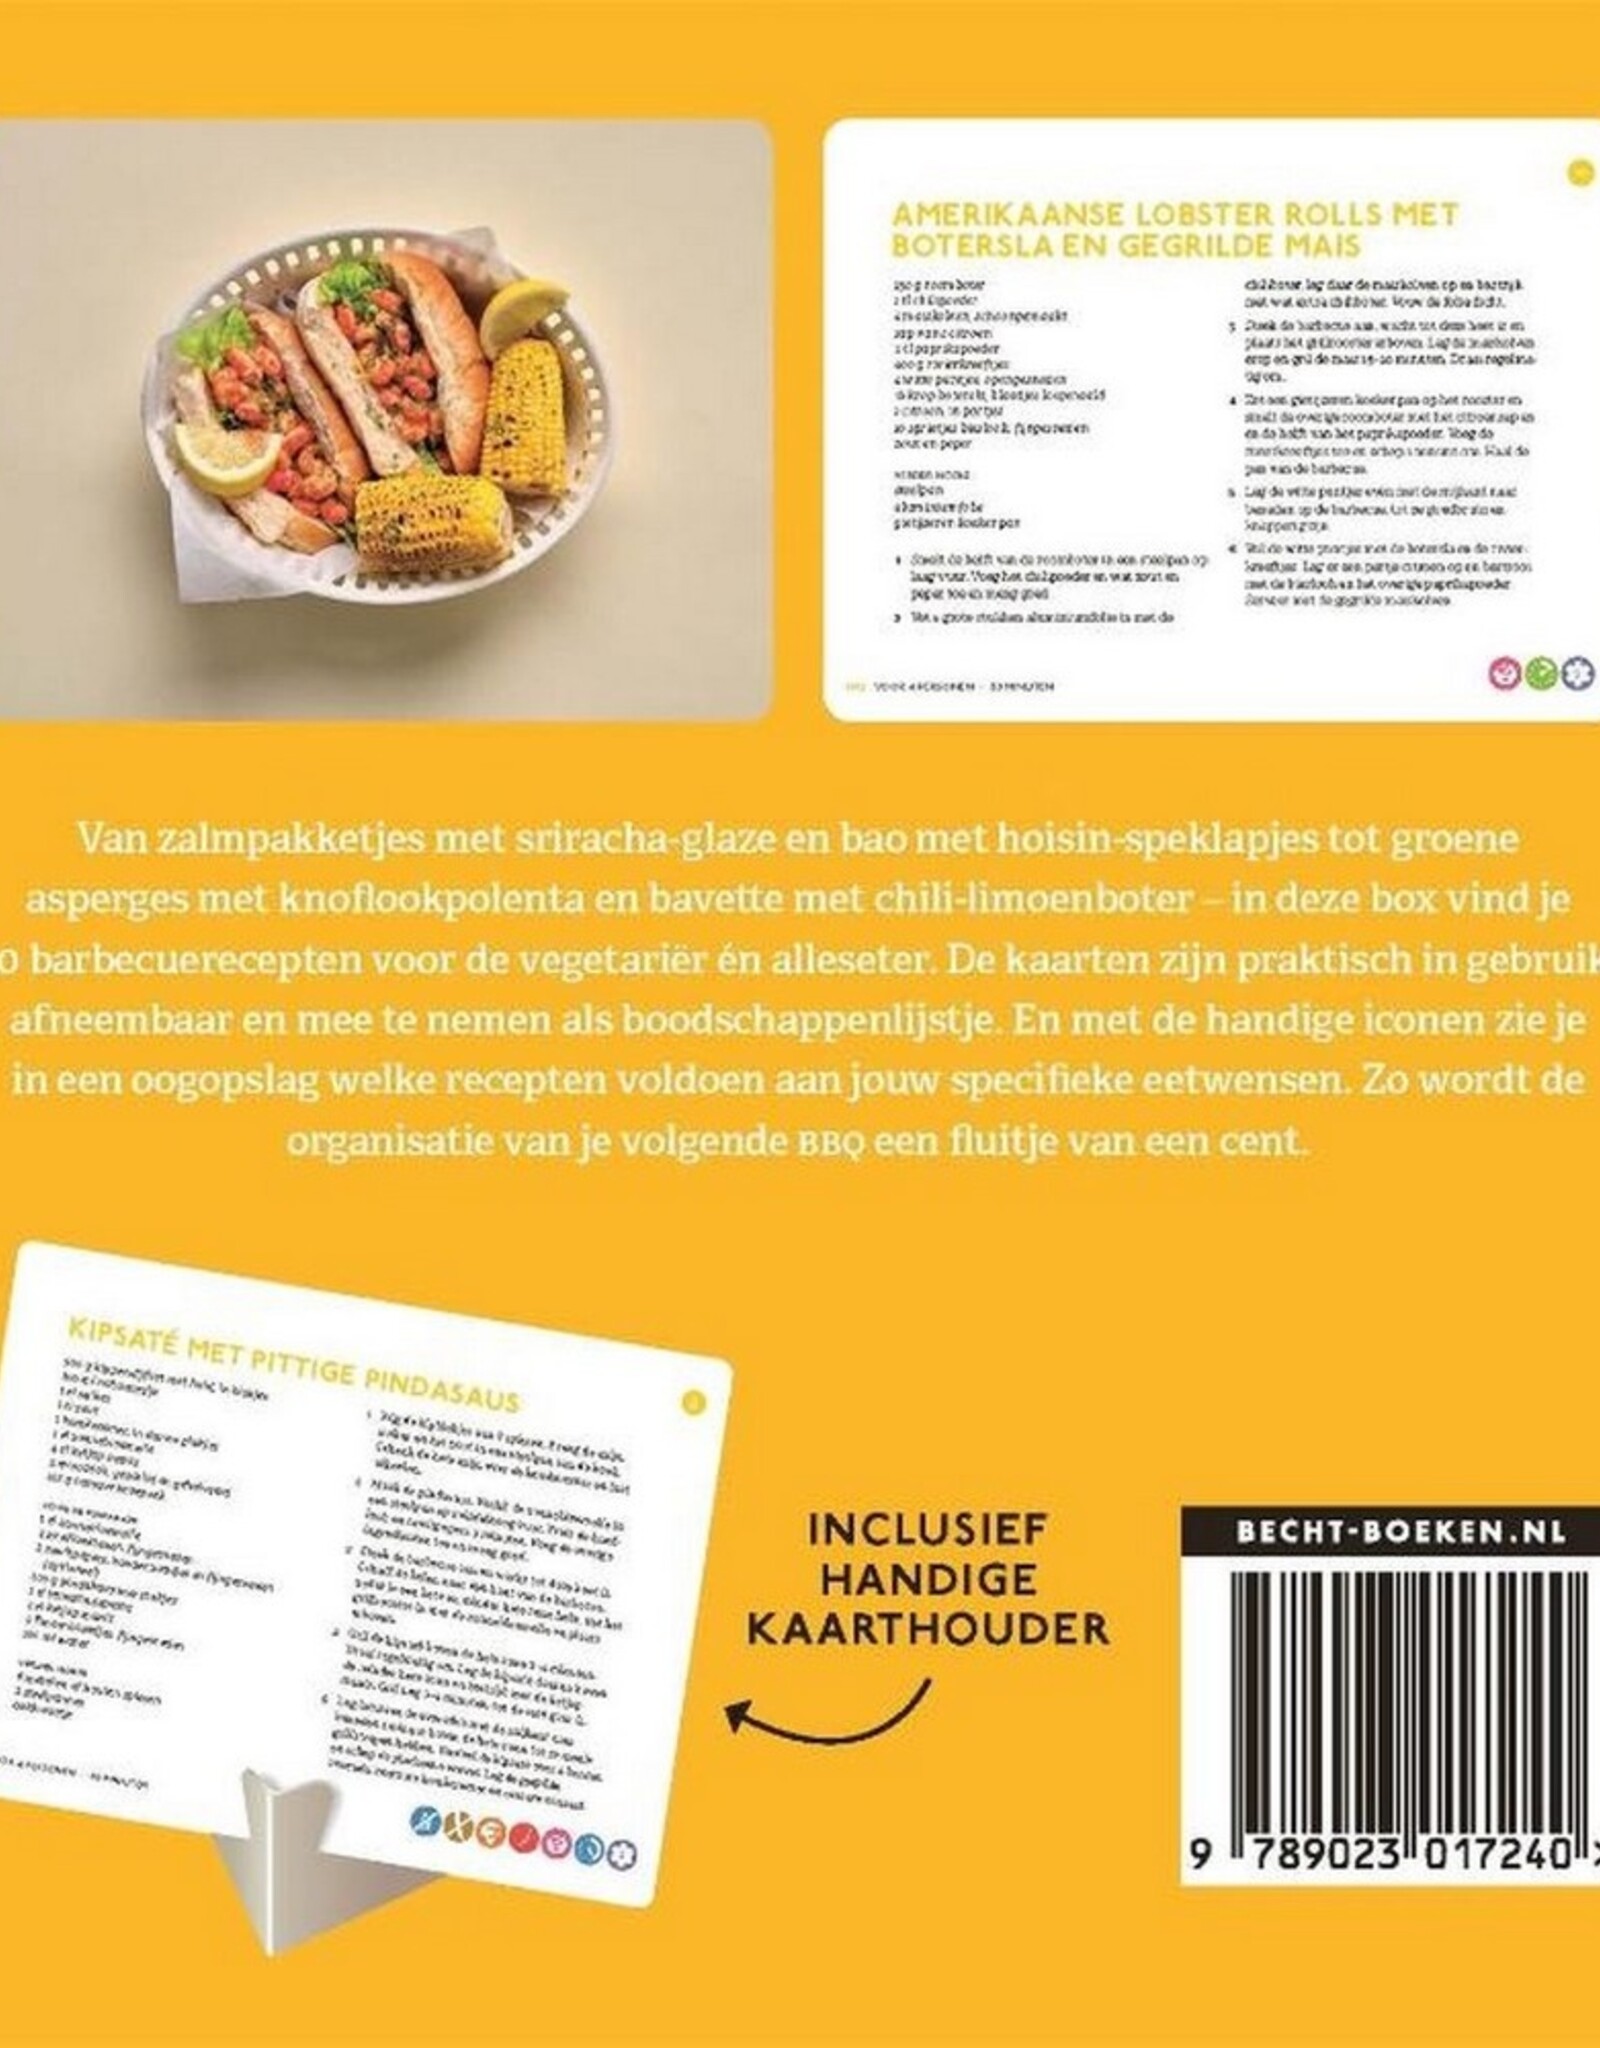 Becht-Boeken.nl Receptkaarten BBQ